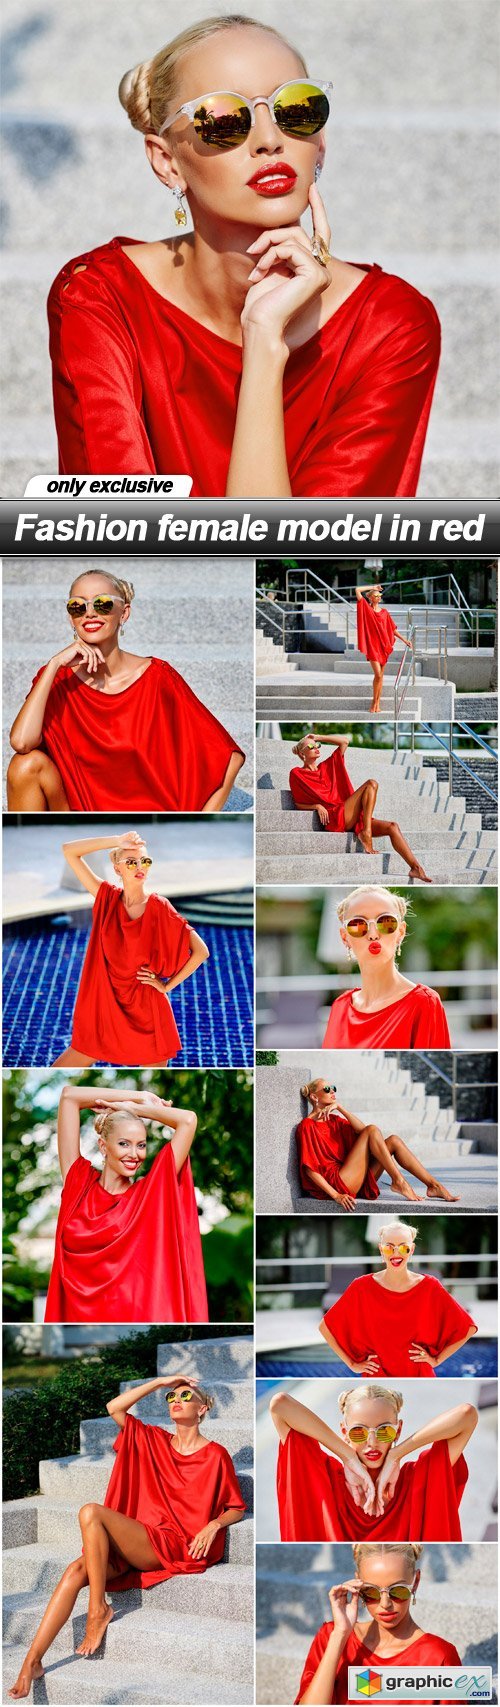 Fashion female model in red - 12 UHQ JPEG